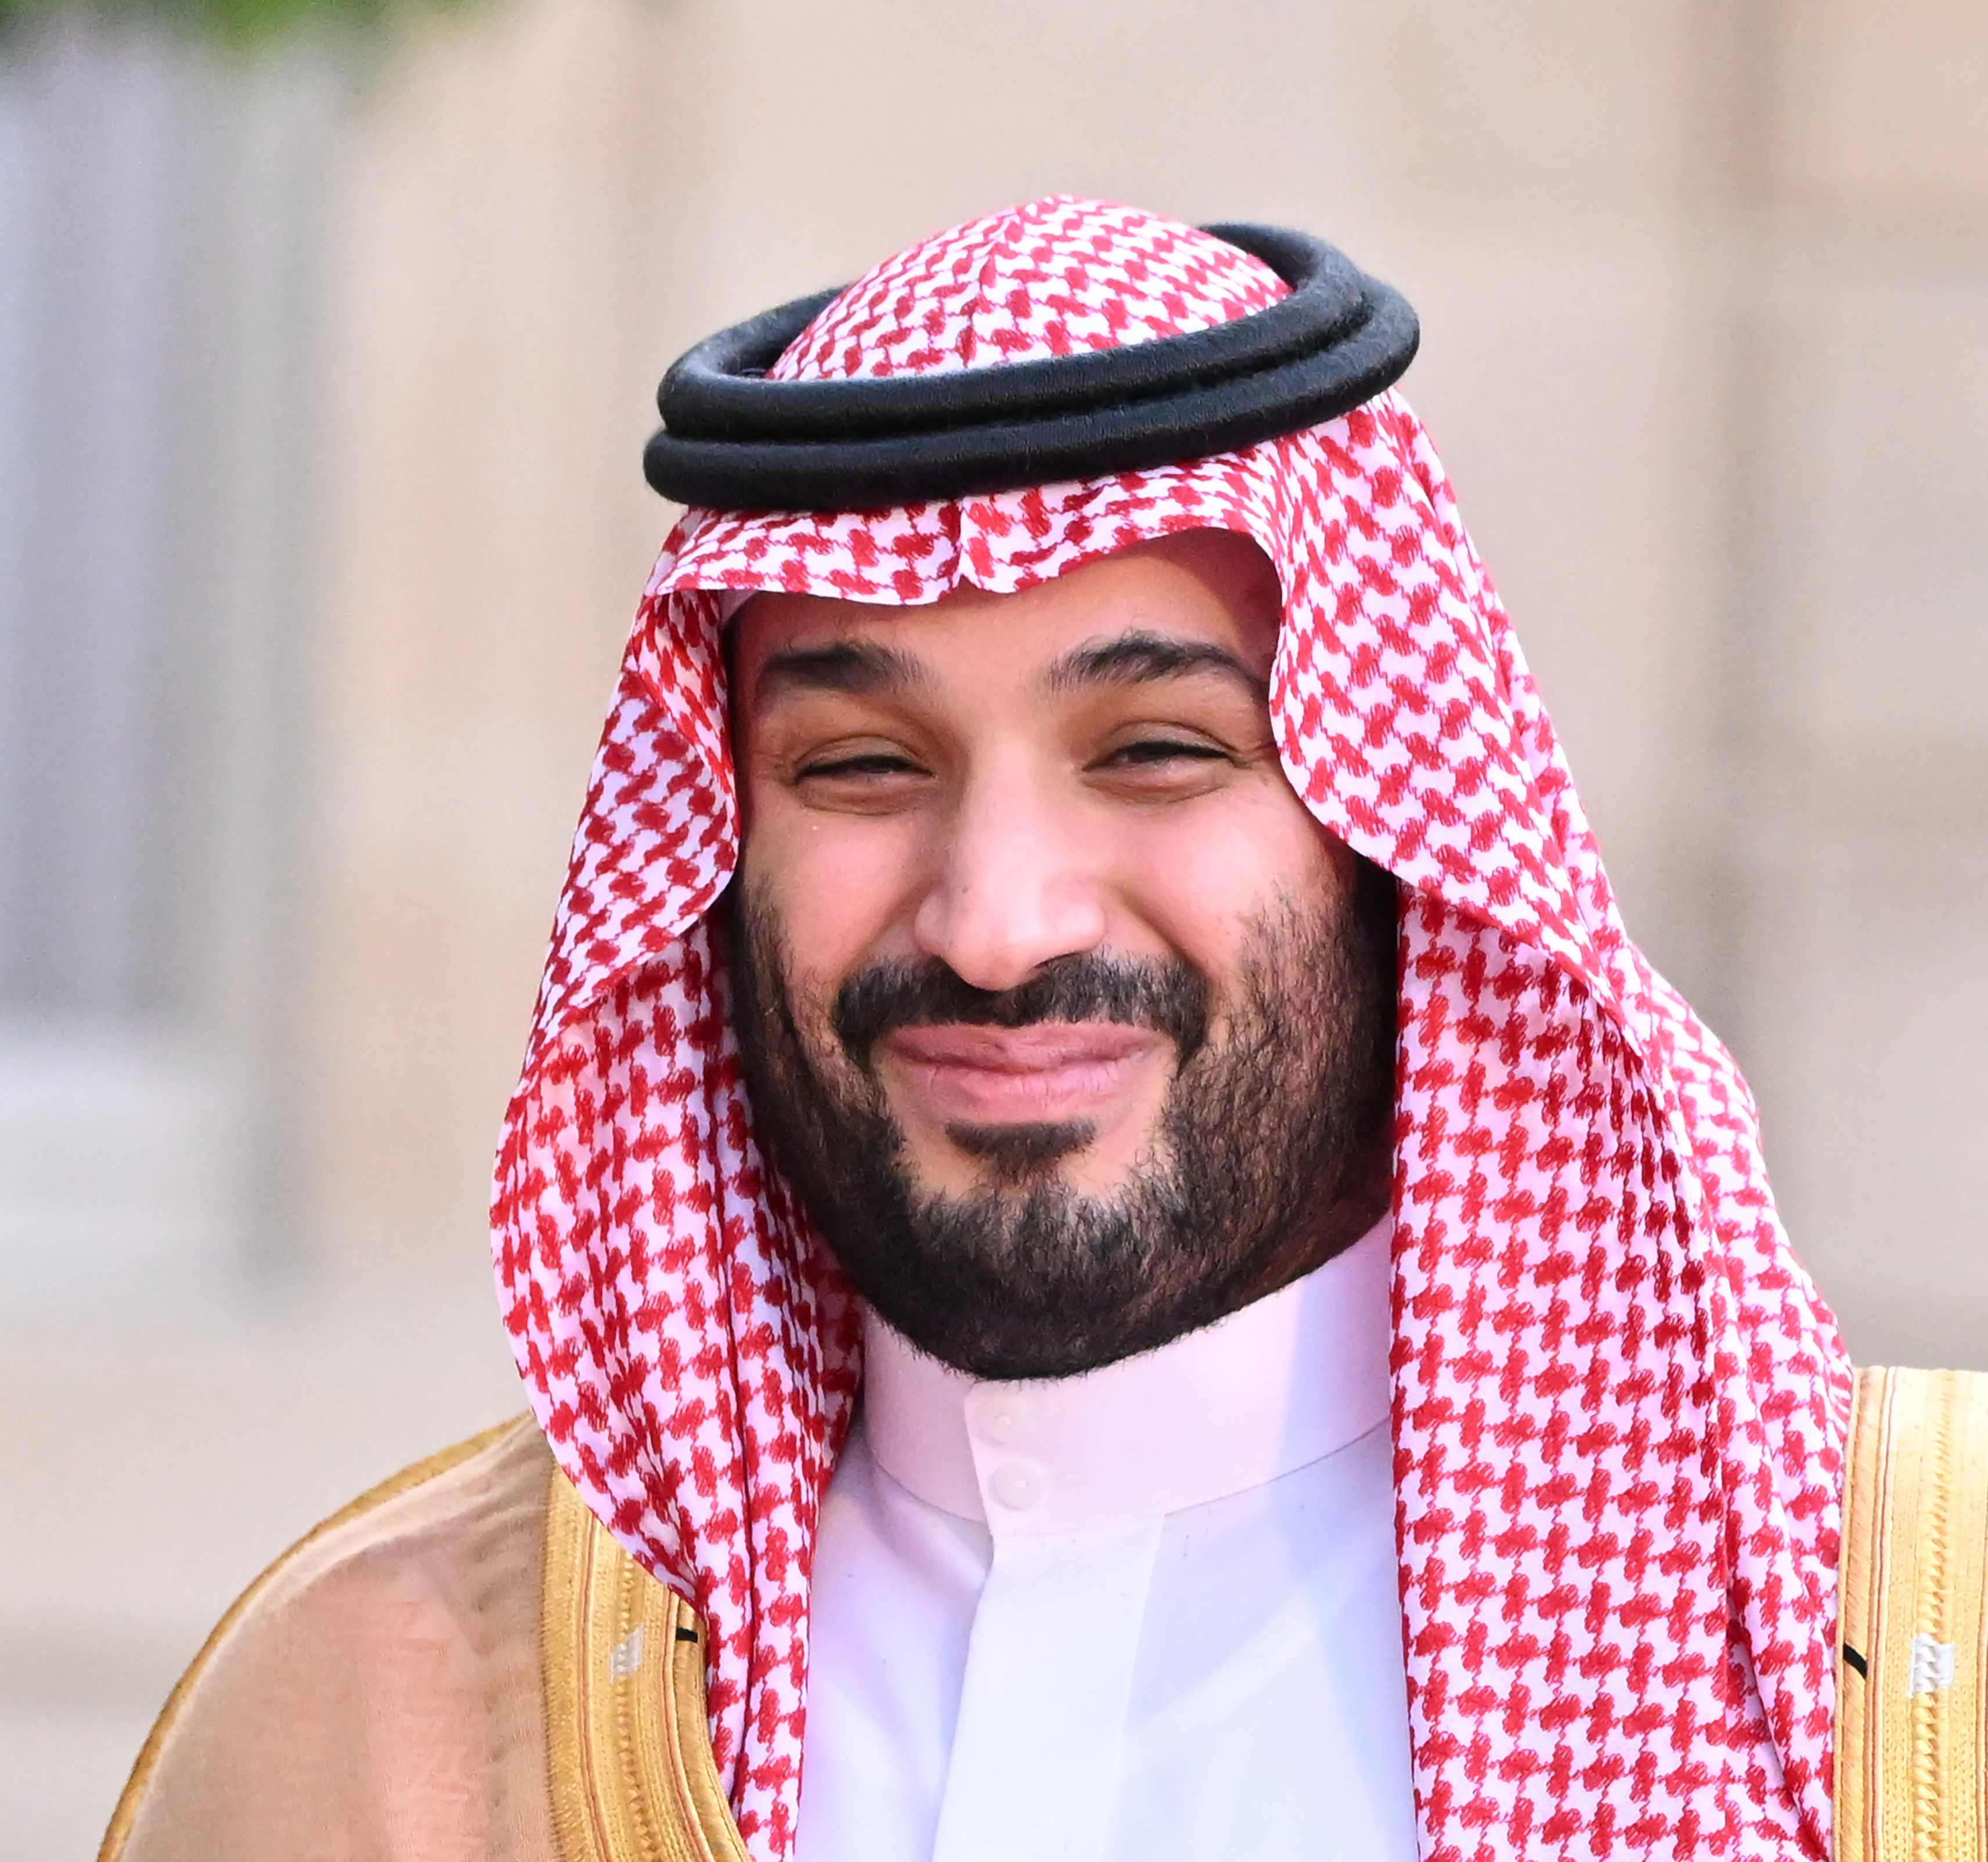 Saudi sheikh causes stir with MbS 'Prince of Muslims' tweet